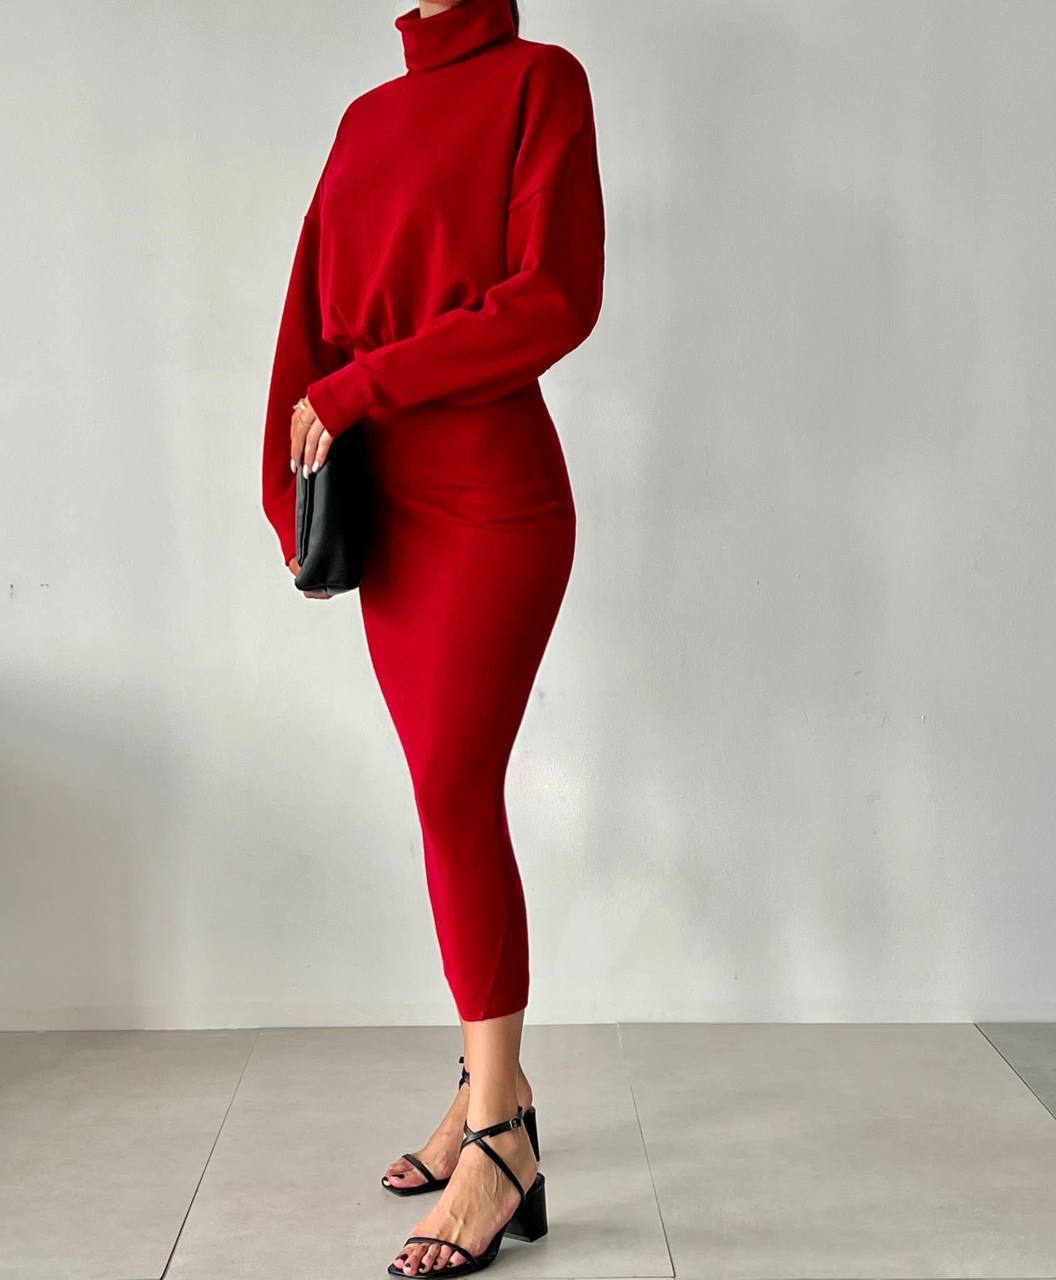 CLZ274 Kadın Balıkçı Yaka Triko Elbise - Kırmızı